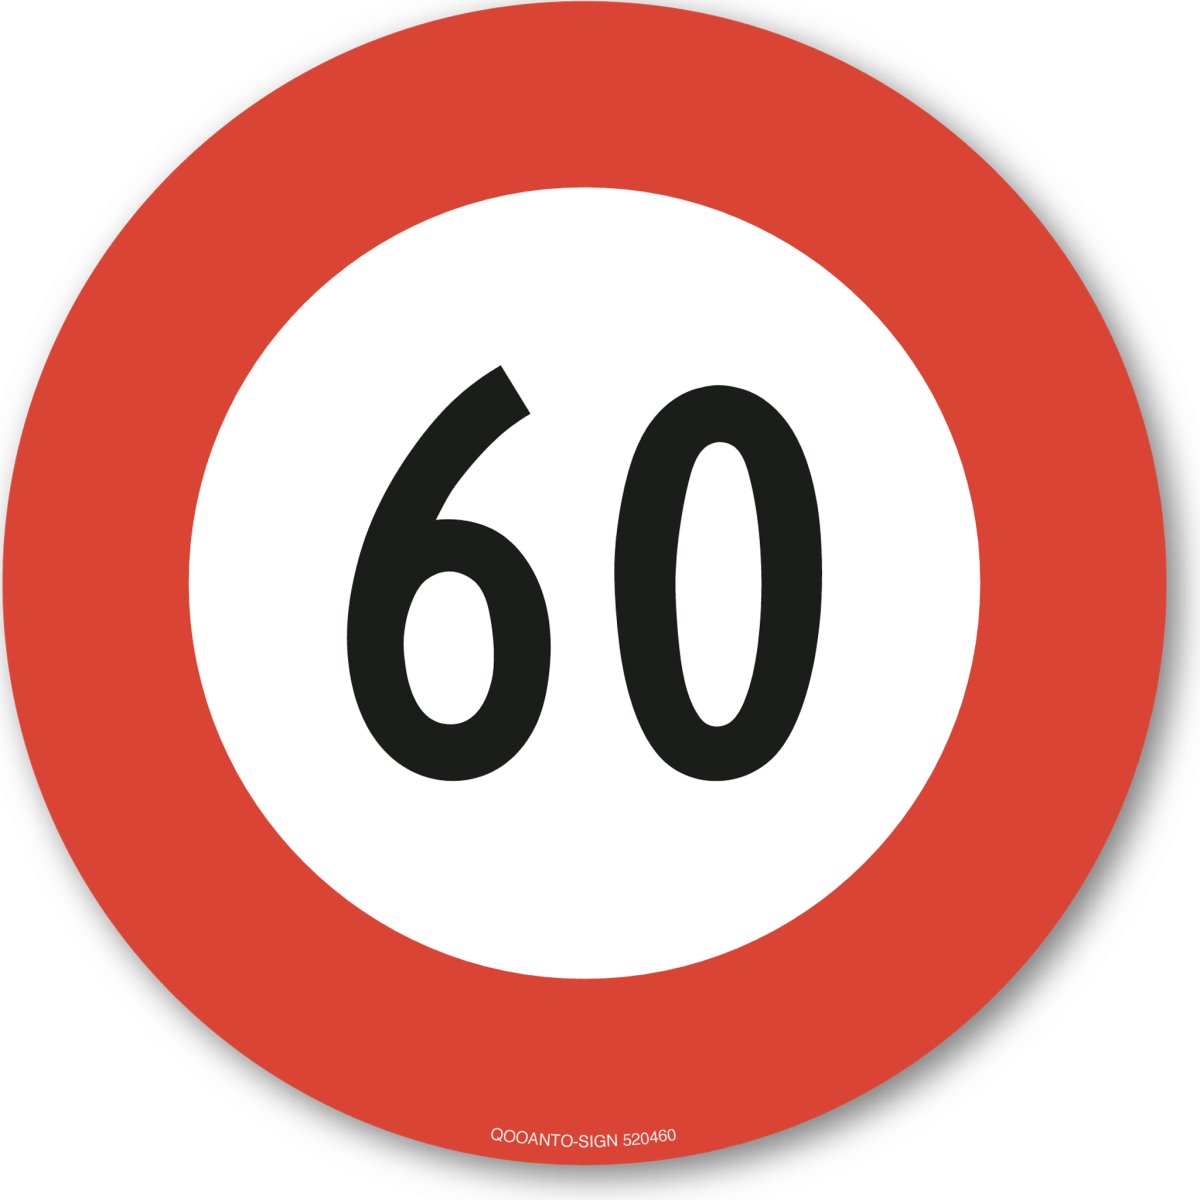 60 Höchstgeschwindigkeit Verkehrsschild oder Aufkleber aus Alu-Verbund oder Selbstklebefolie mit UV-Schutz - QOOANTO-SIGN